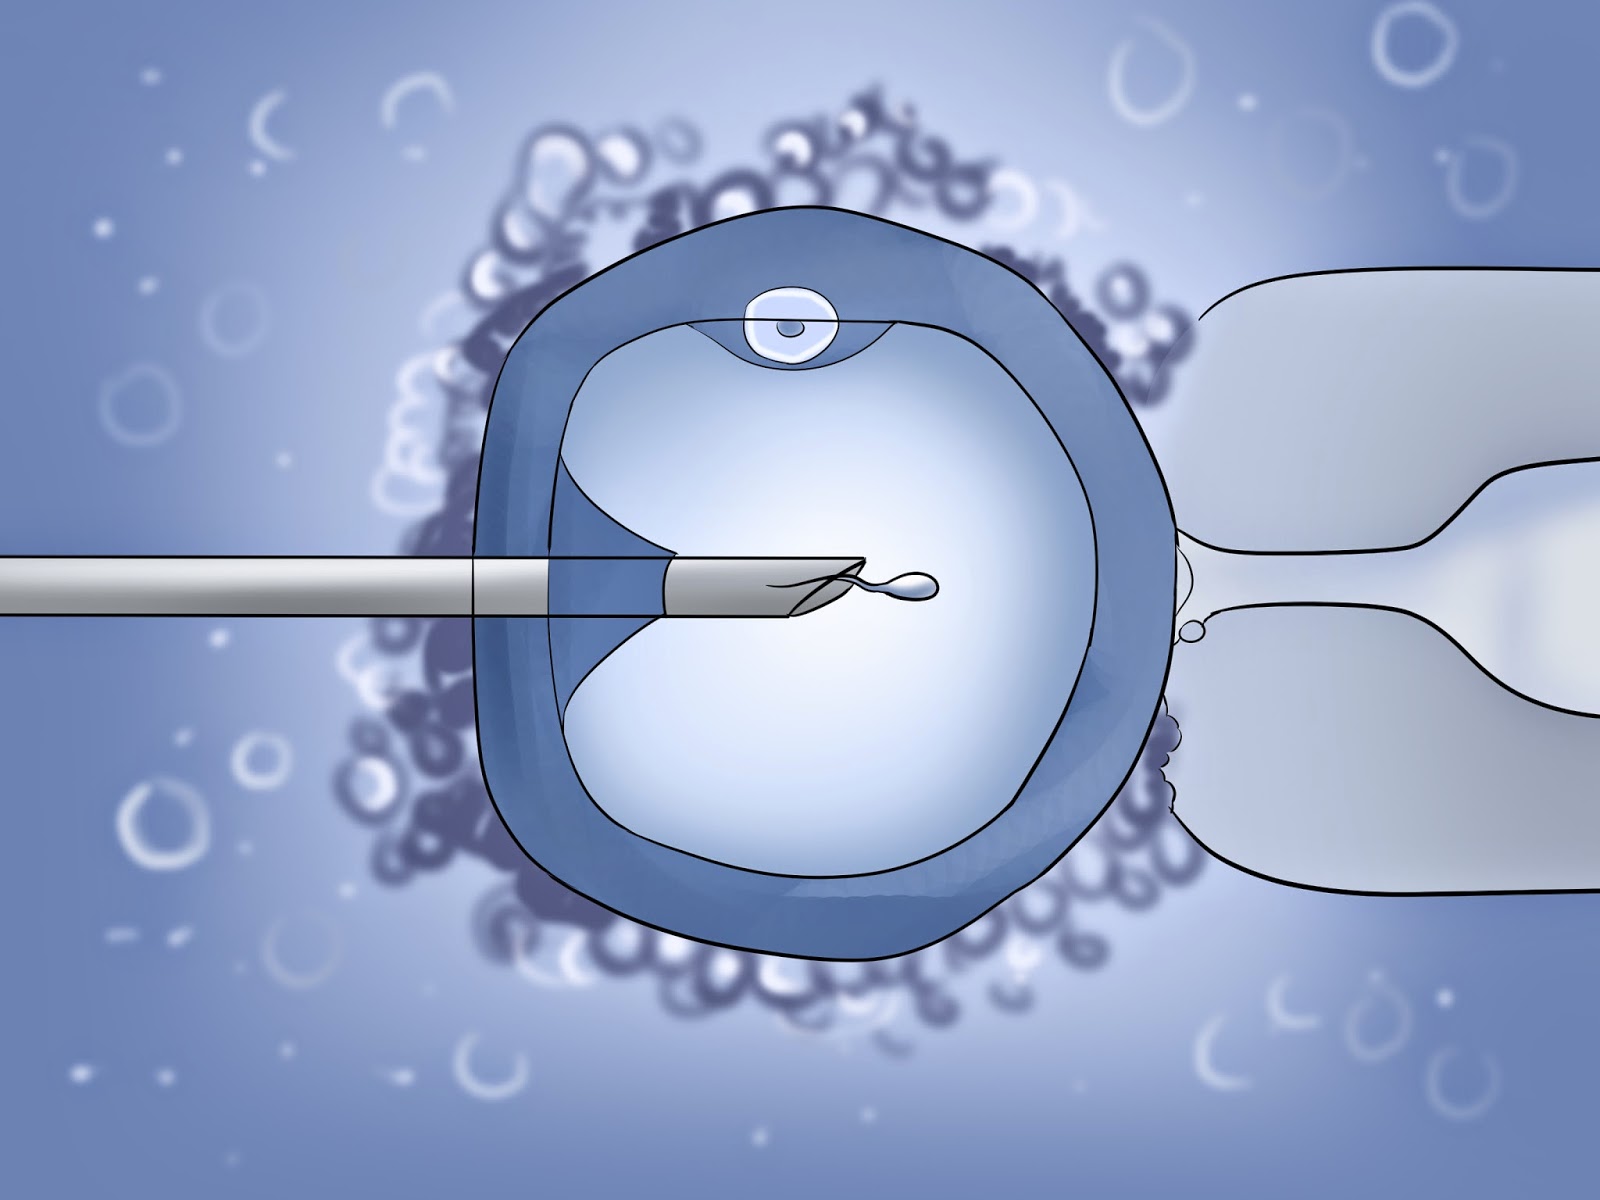 Fertilización in vitro. Se diseña una calculadora online para conocer las probabilidades de éxito